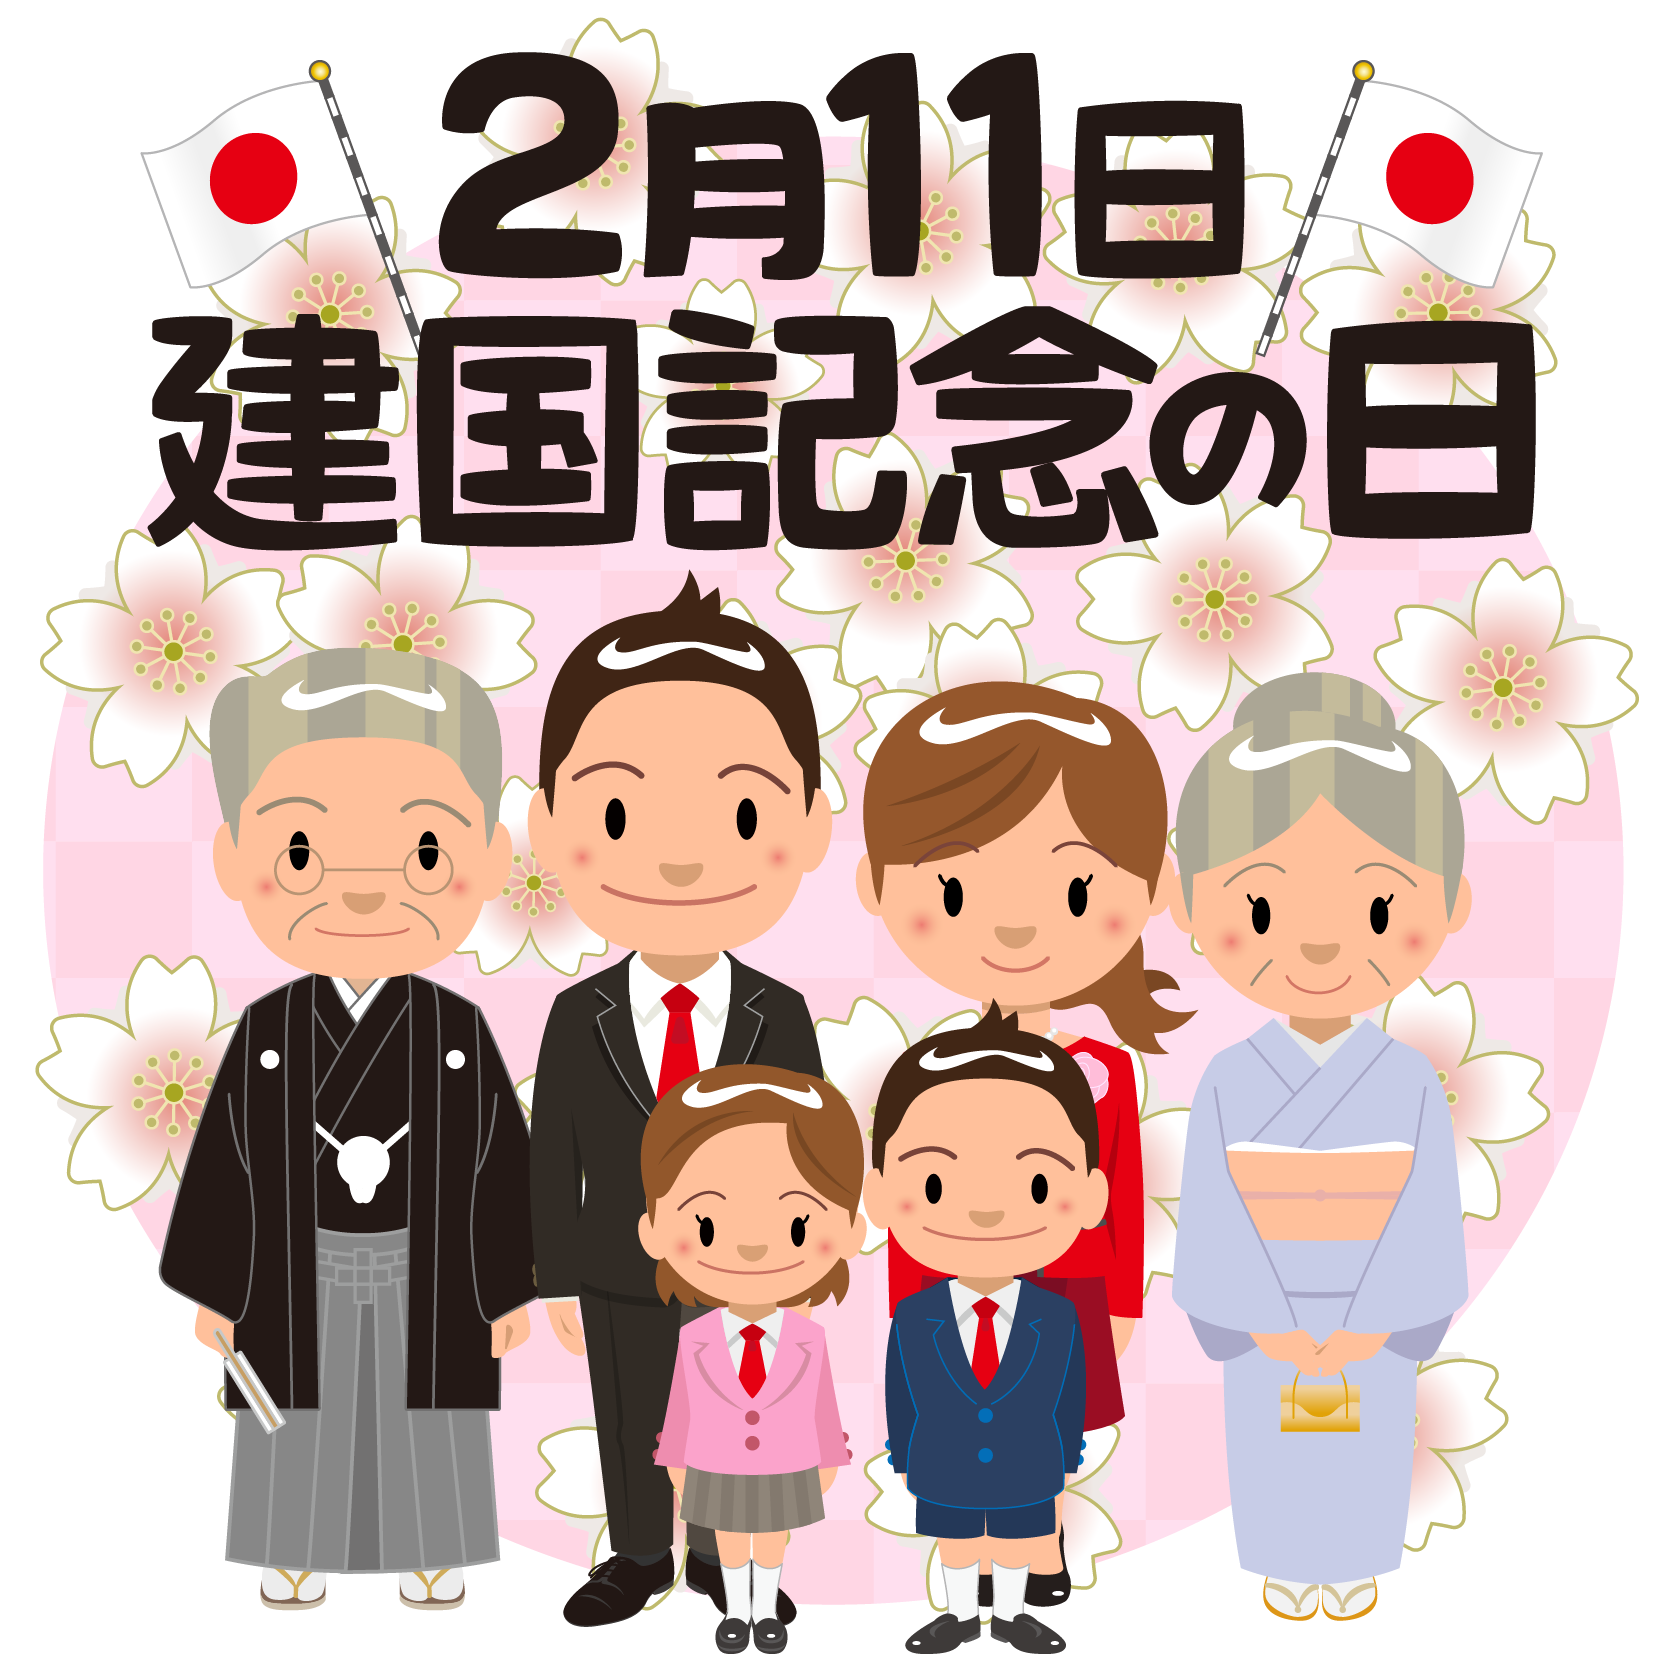 商用フリー 無料イラスト 建国記念日 Japan National Foundation Day022 商用ok フリー素材集 ナイスなイラスト